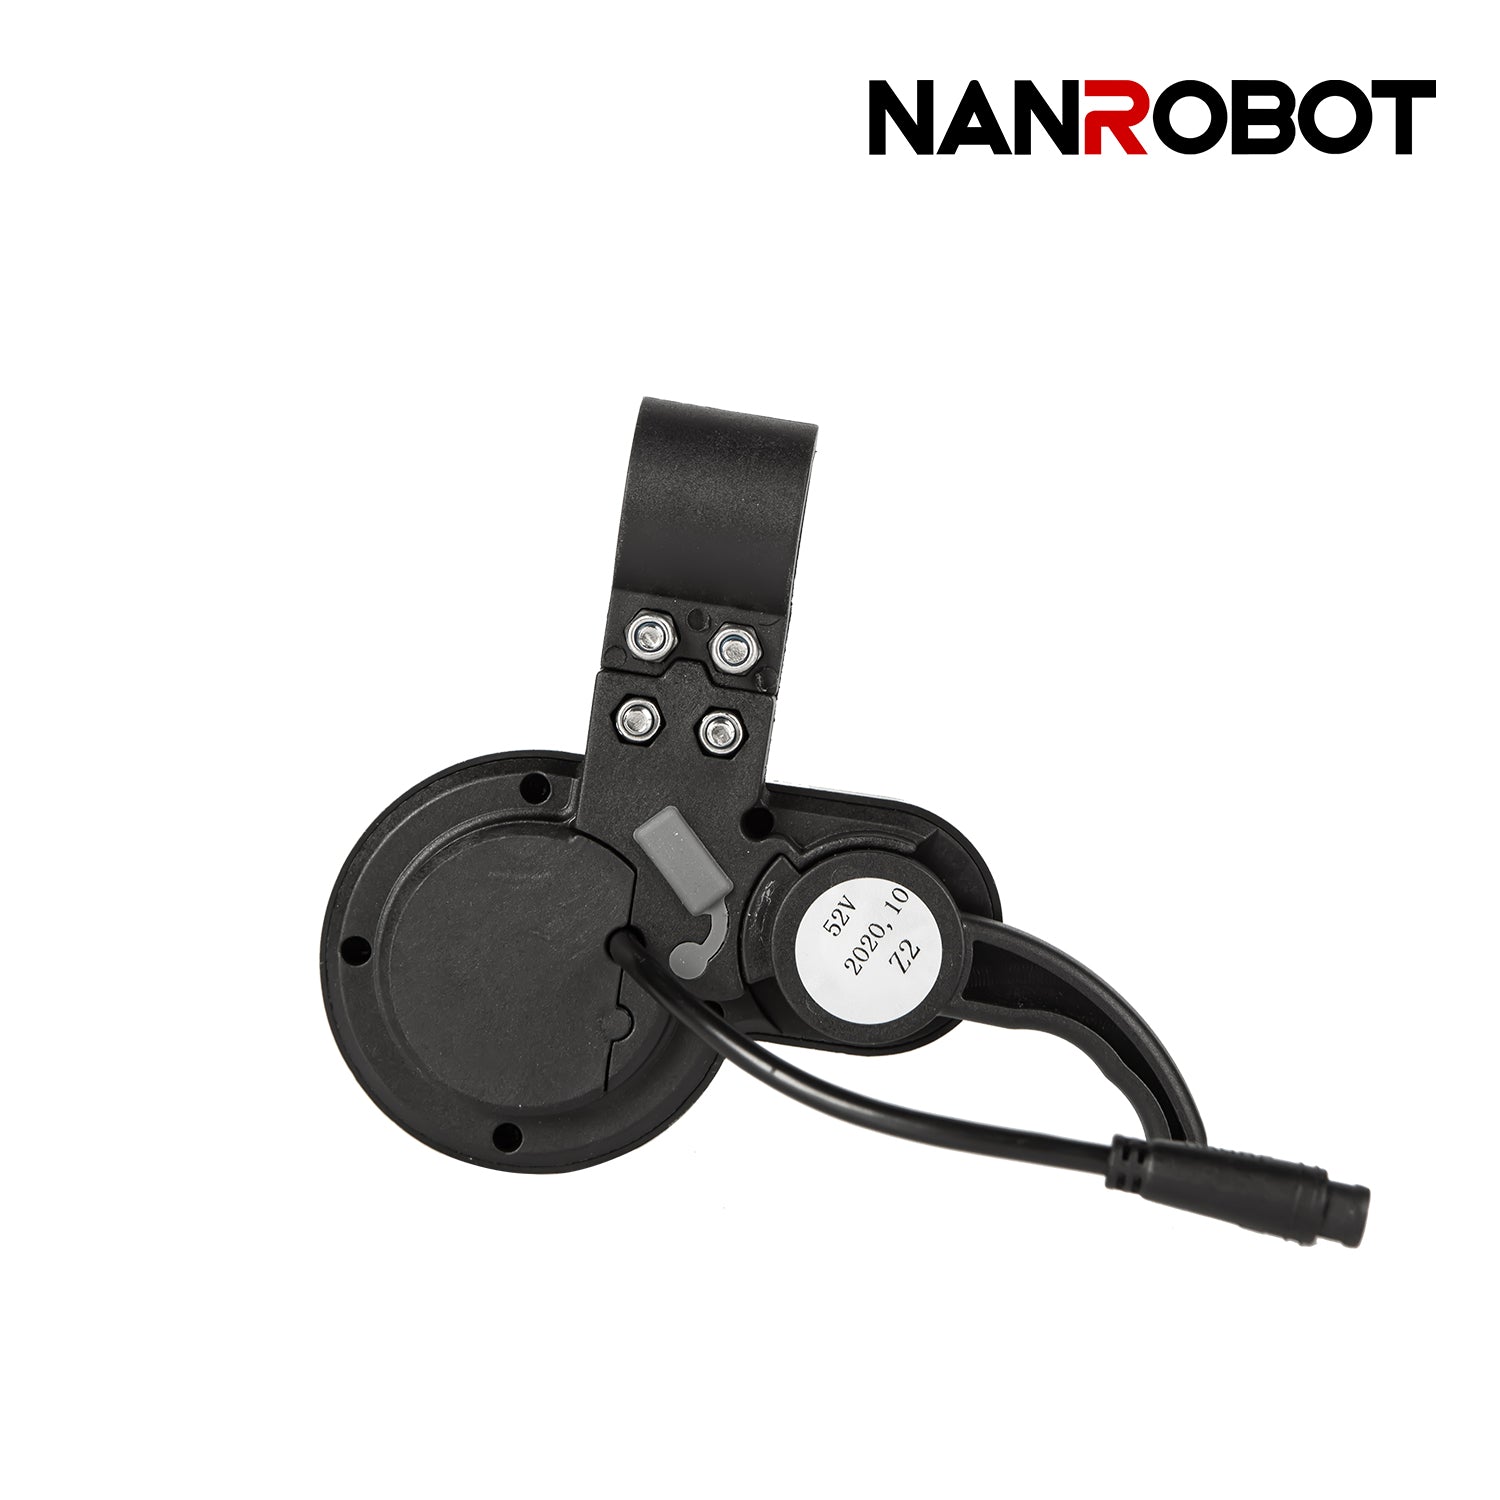 Control Panel - NANROBOT